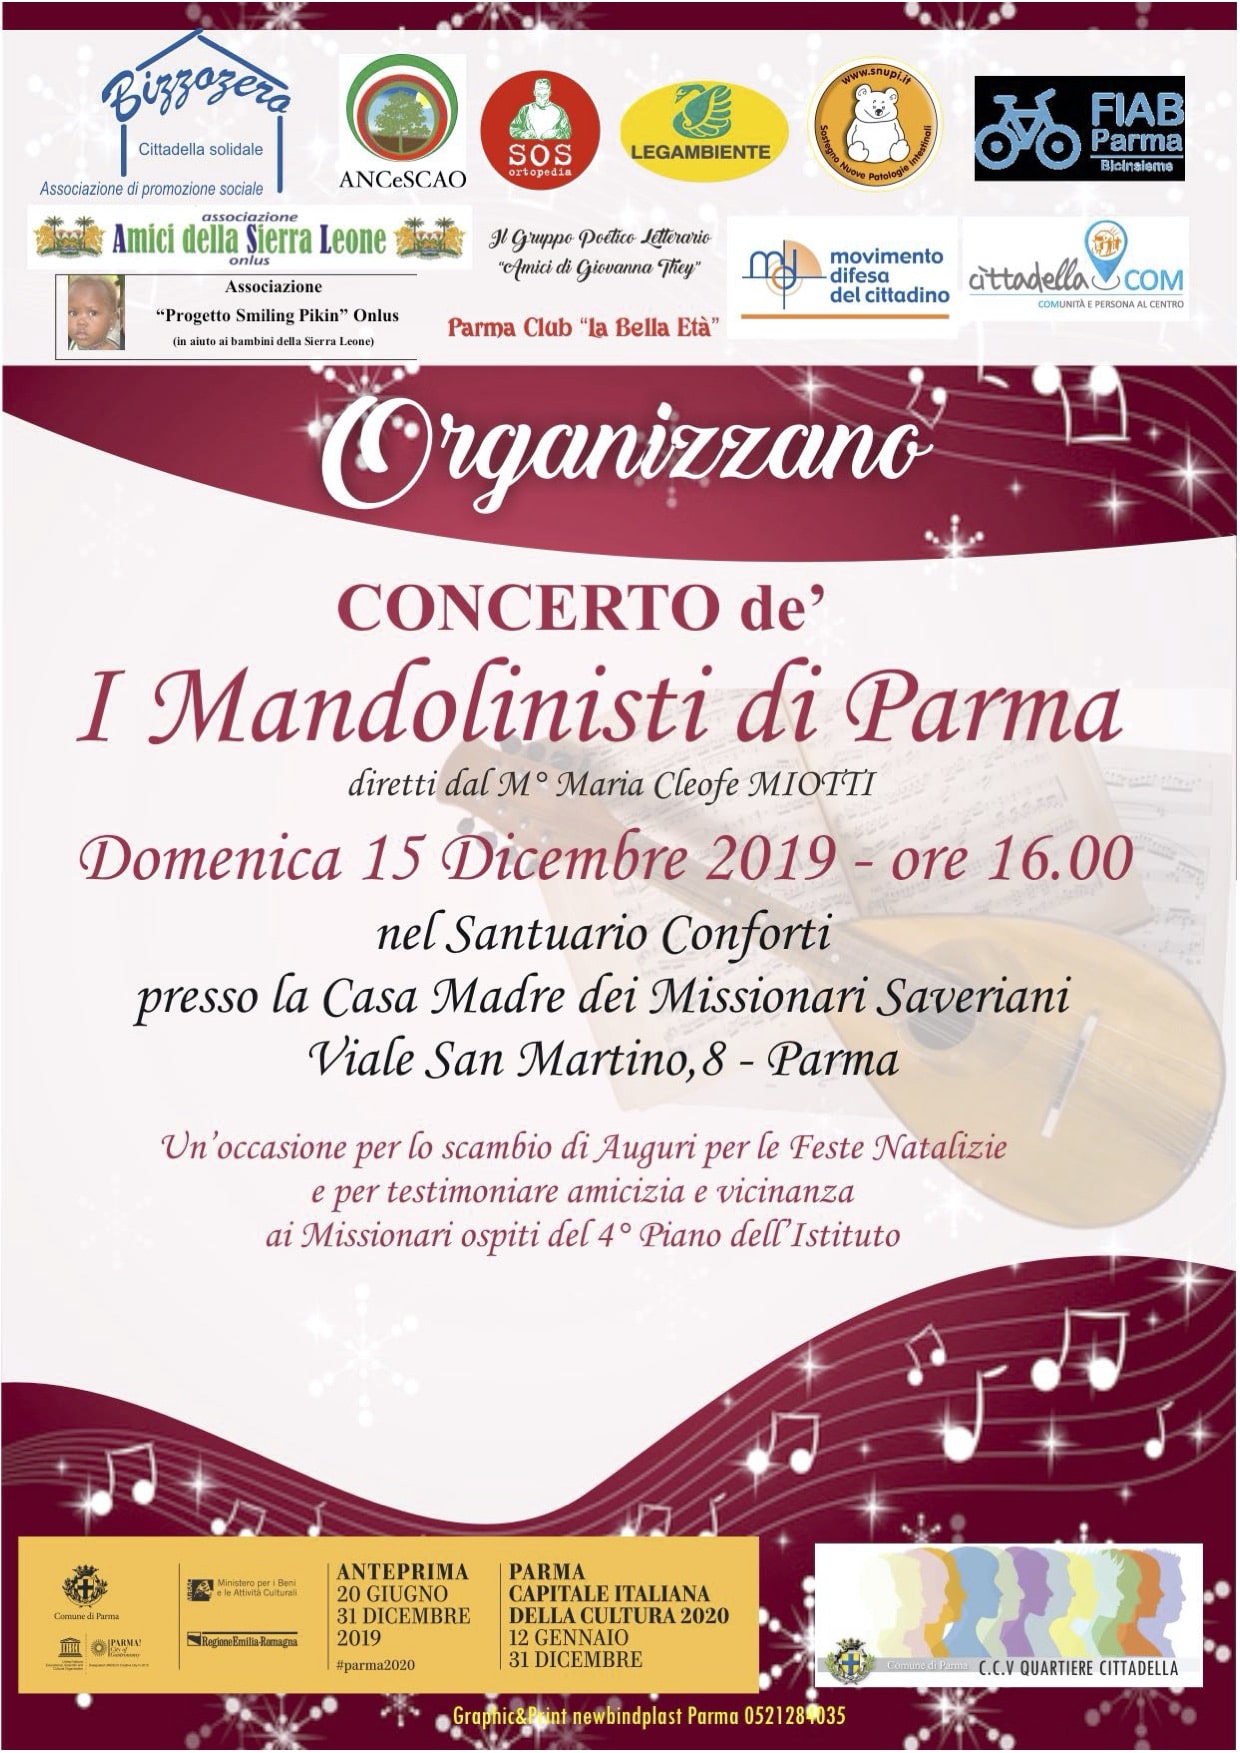 I Mandolinisti di Parma in concerto